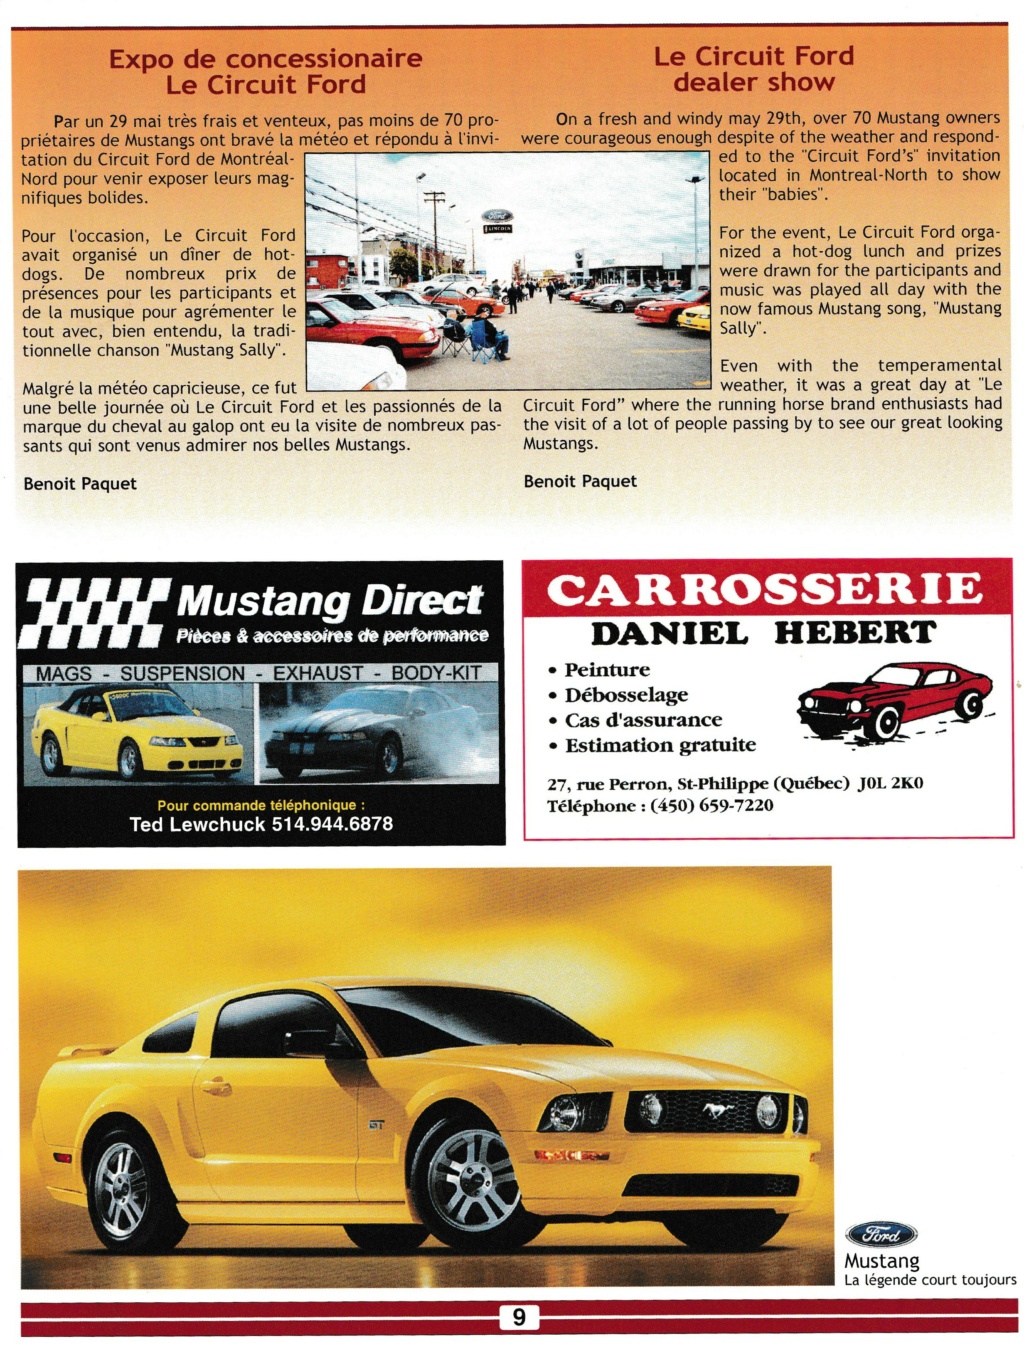 Montréal Mustang: 40 ans et + d’activités! (Photos-Vidéos,etc...) - Page 18 Img_2584